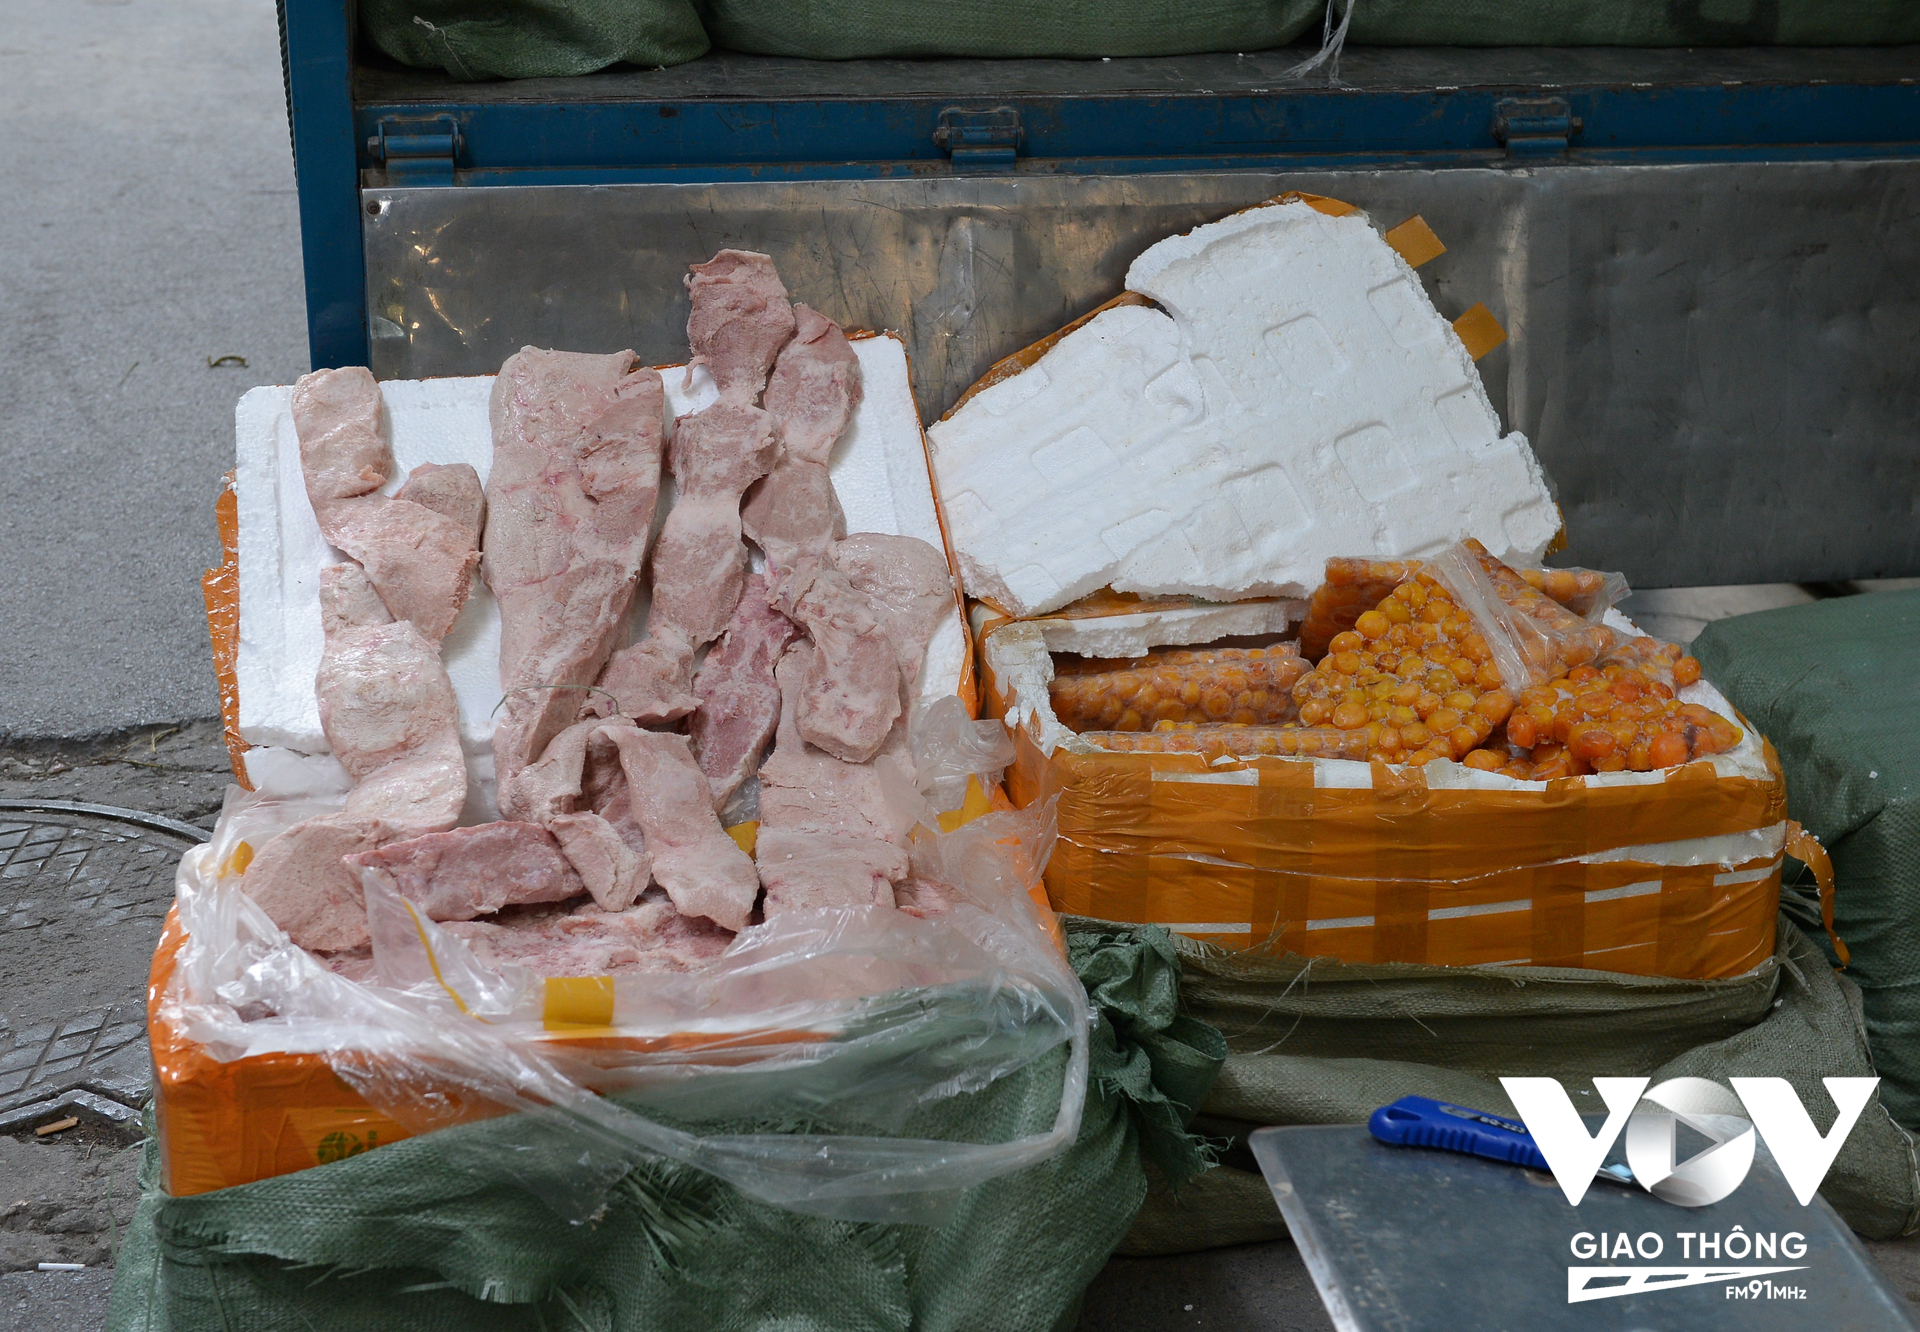 Số nội tạng động vật bao gồm nầm lợn, trứng non đông lạnh được cất giữ trong các thùng xốp.